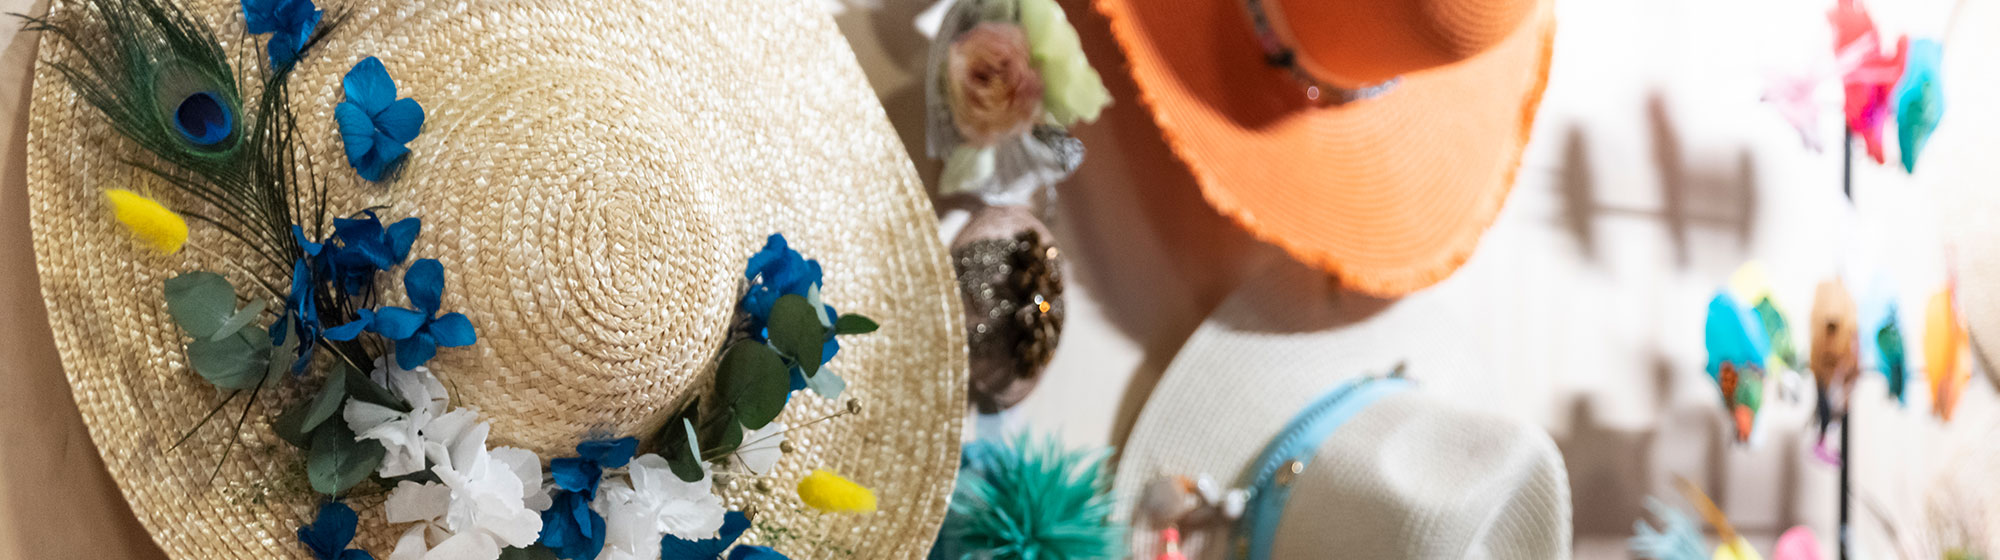 décorations de chapeaux avec des fleurs et des tissus colorés